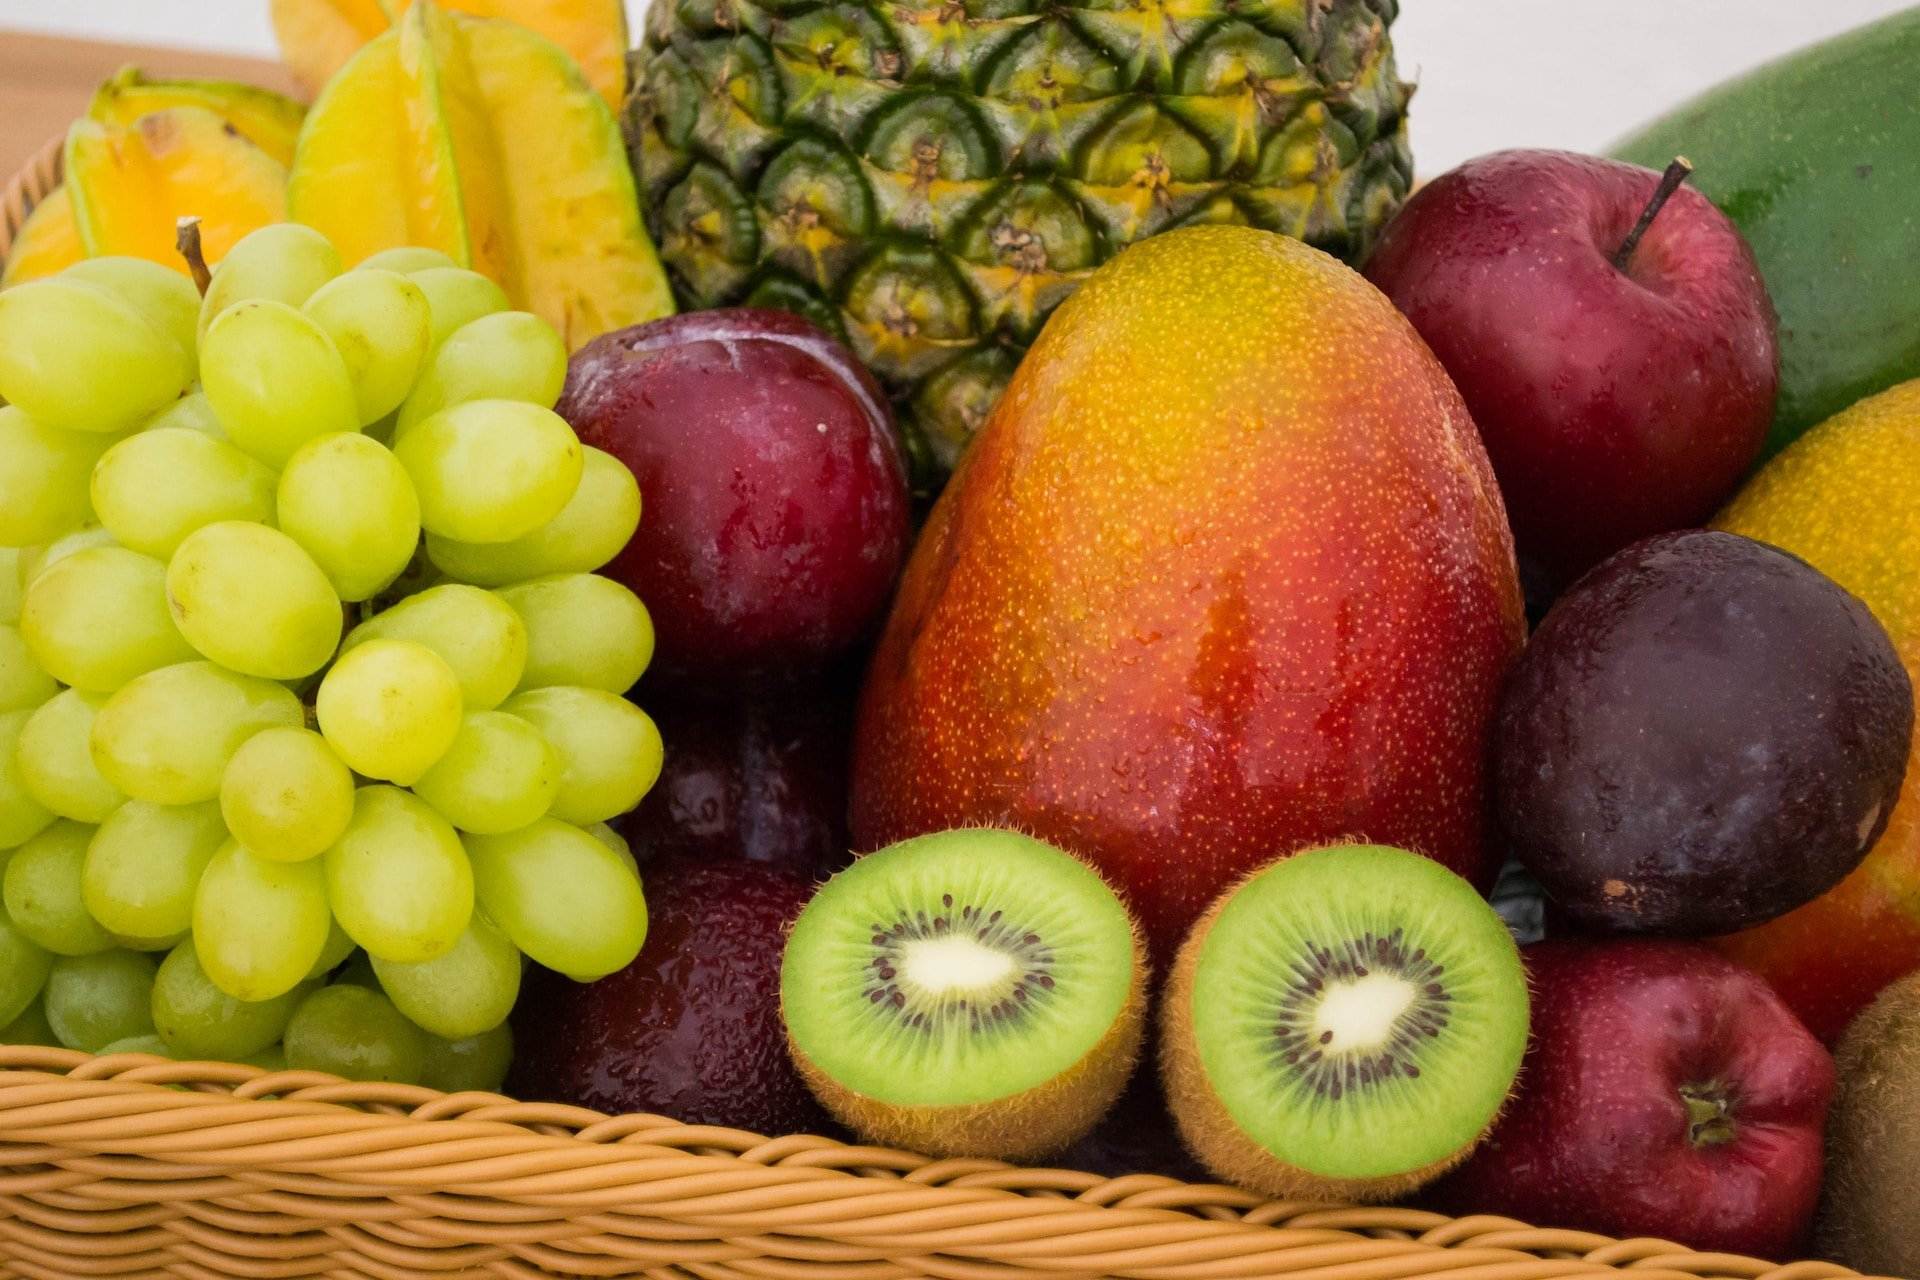 És bo menjar fruita a la nit? Això és el que hauries de saber